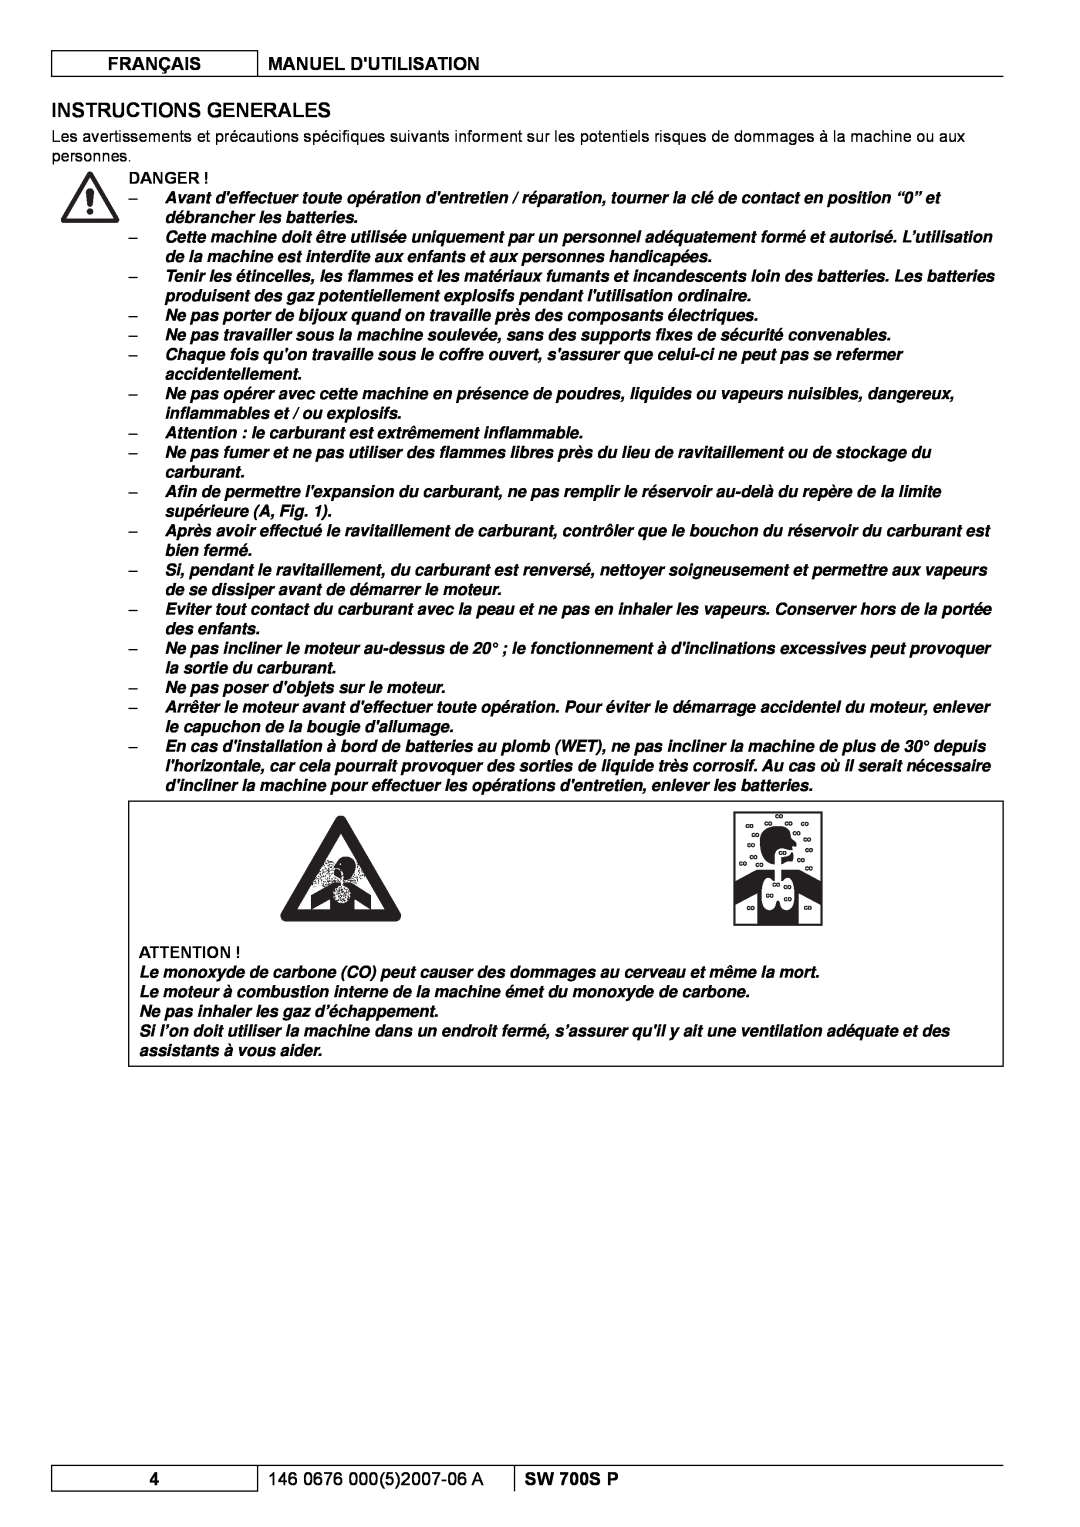 Nilfisk-Advance America SW 700S P Instructions Generales, Français, Manuel Dutilisation, 146 0676 00052007-06A, Danger 